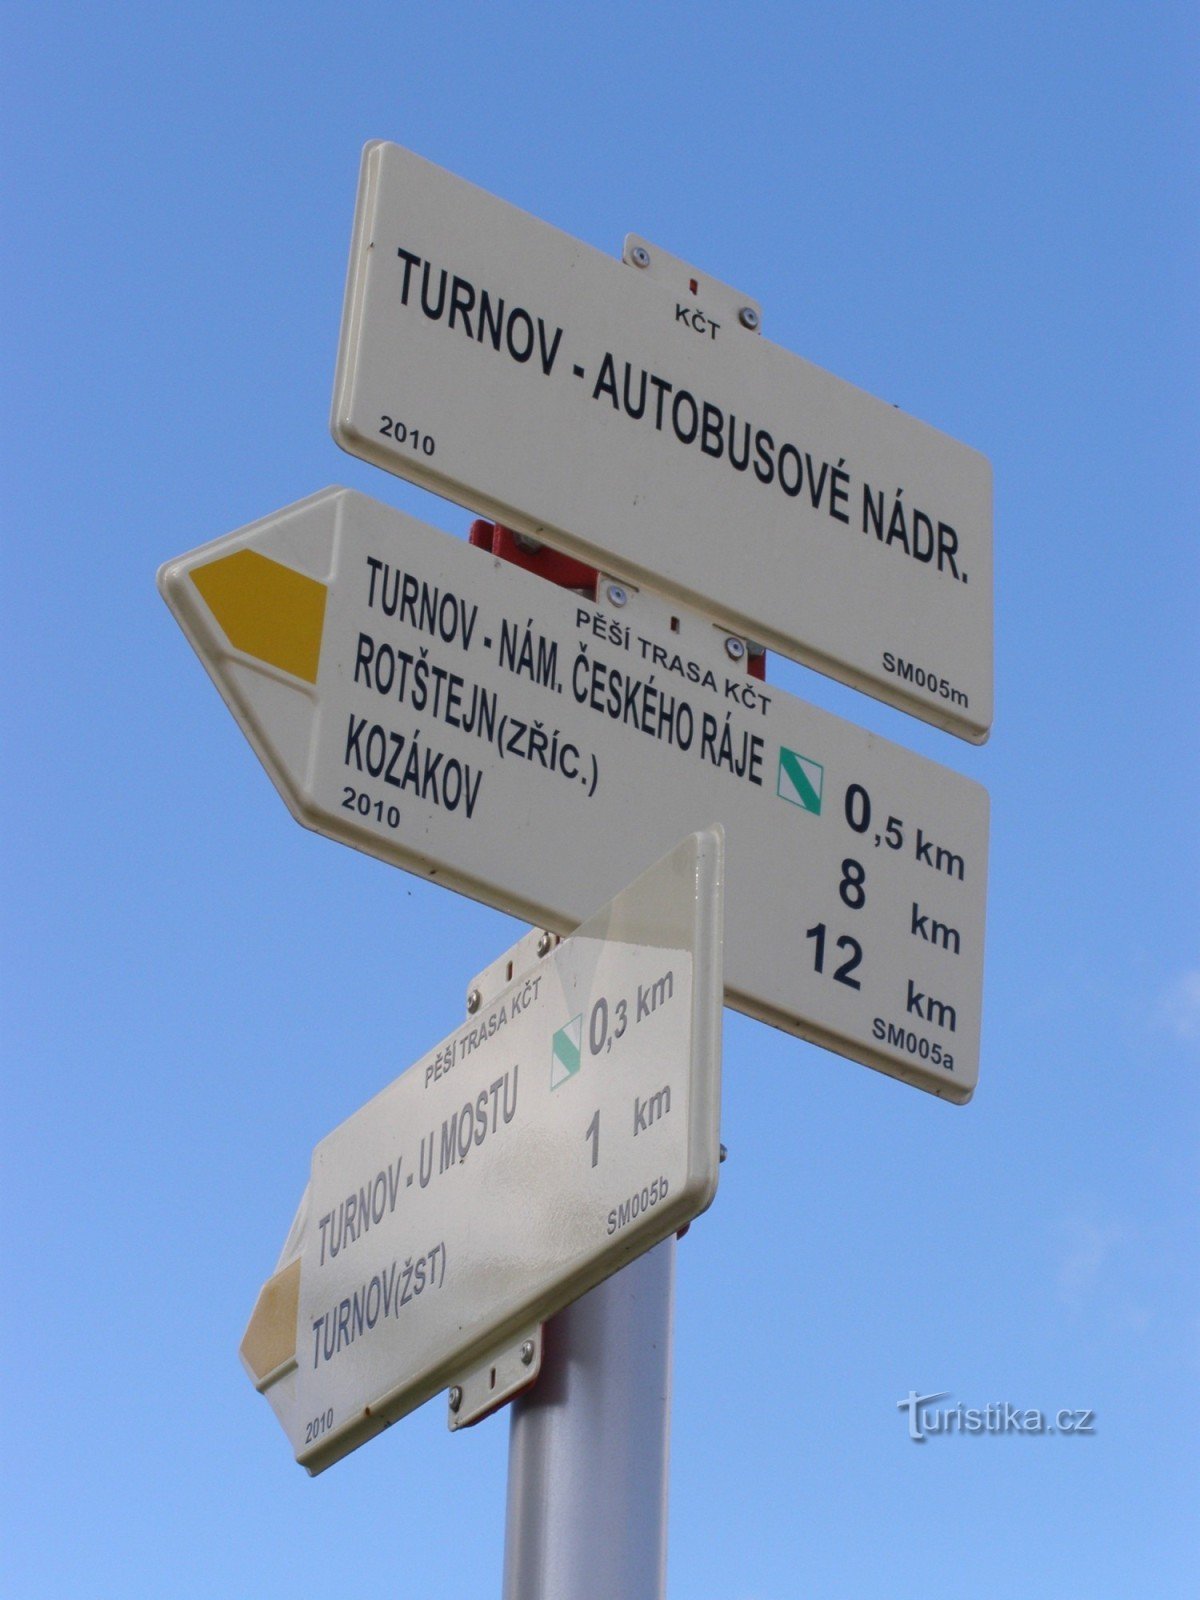 encrucijada turística Turnov - estación de autobuses